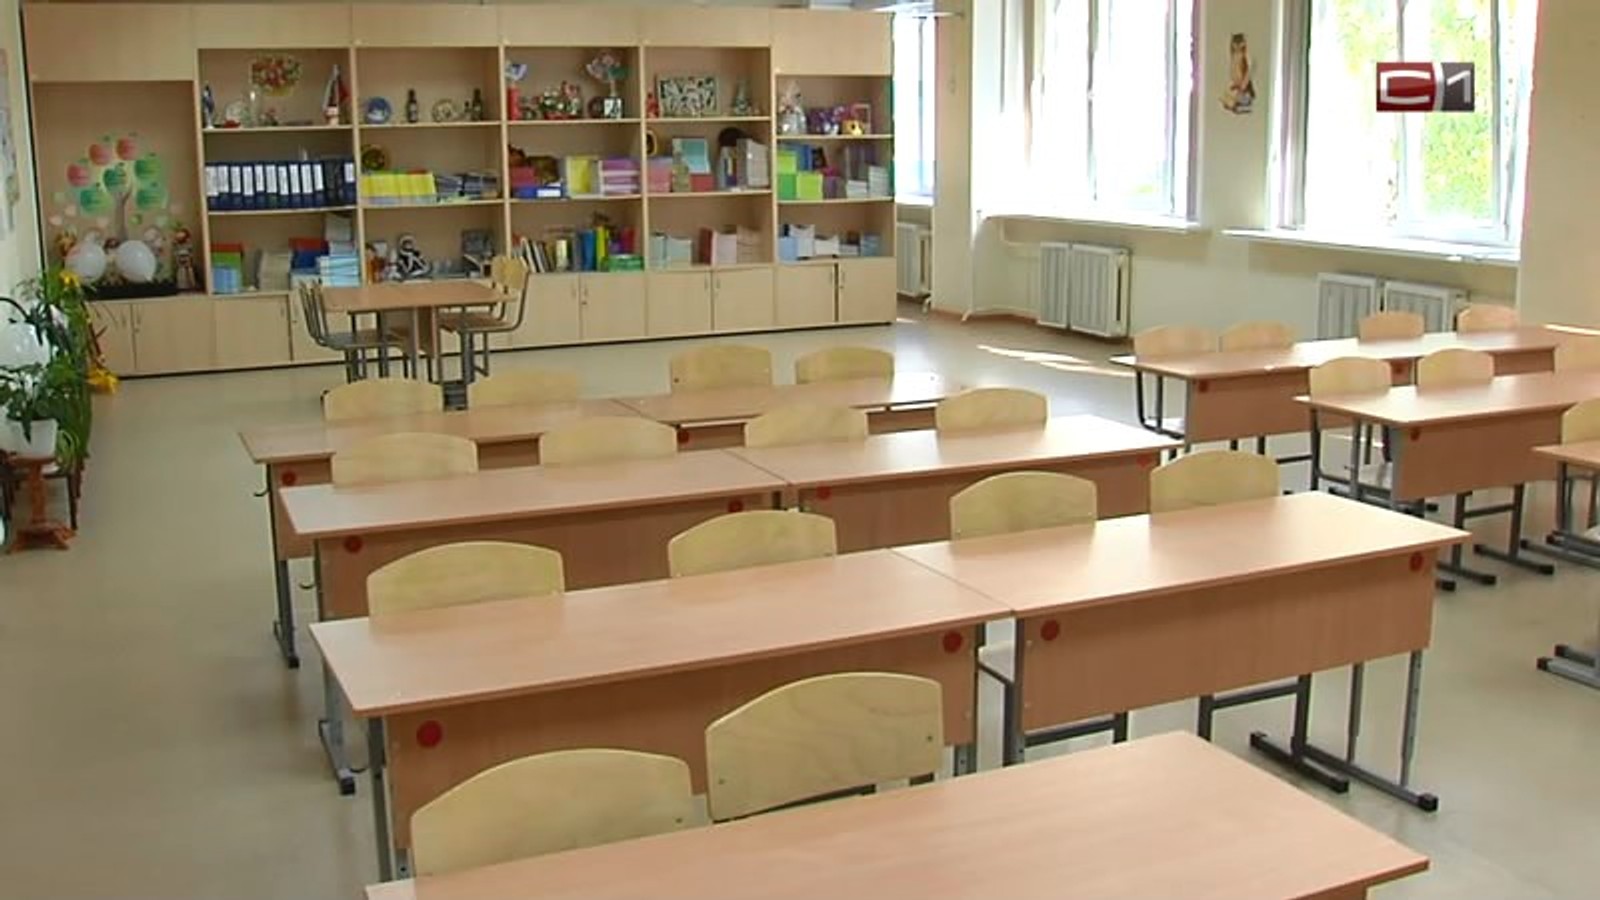 У Москві вчителя затримали за звинуваченням в домаганнях до шестирічної учениці